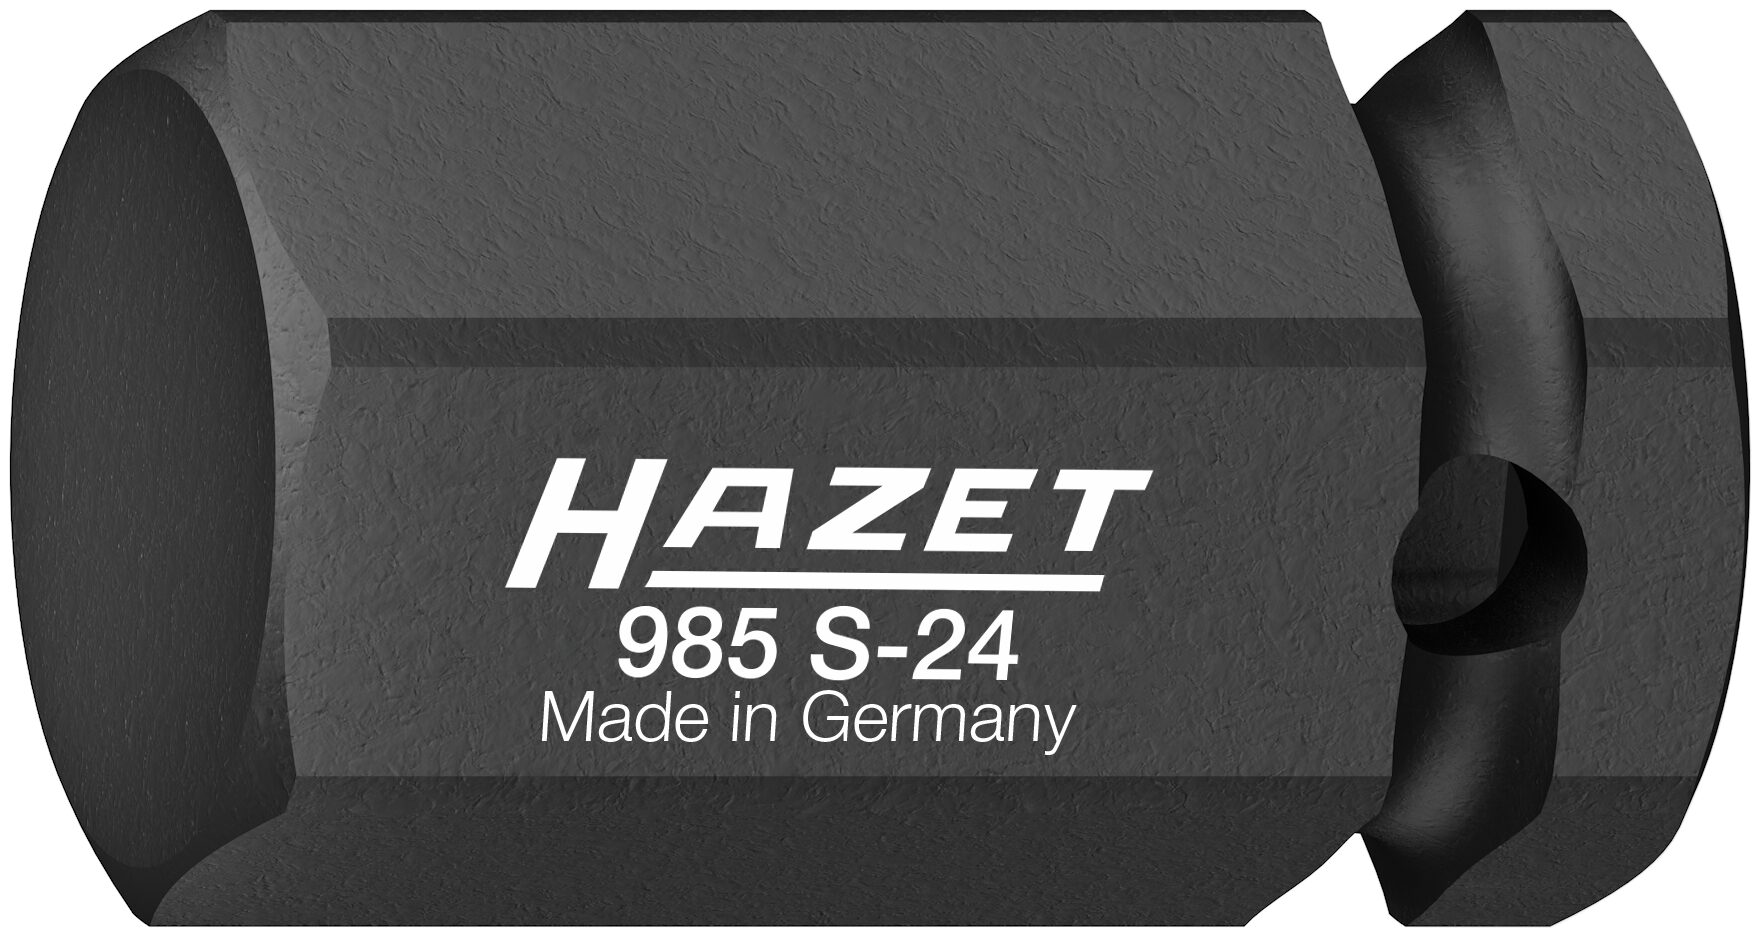 HAZET Schlag-, Maschinenschrauber Schraubendreher-Steckschlüsseleinsatz 985S-24 · Vierkant hohl 12,5 mm (1/2 Zoll) · Innen Sechskant Profil · 24 mm